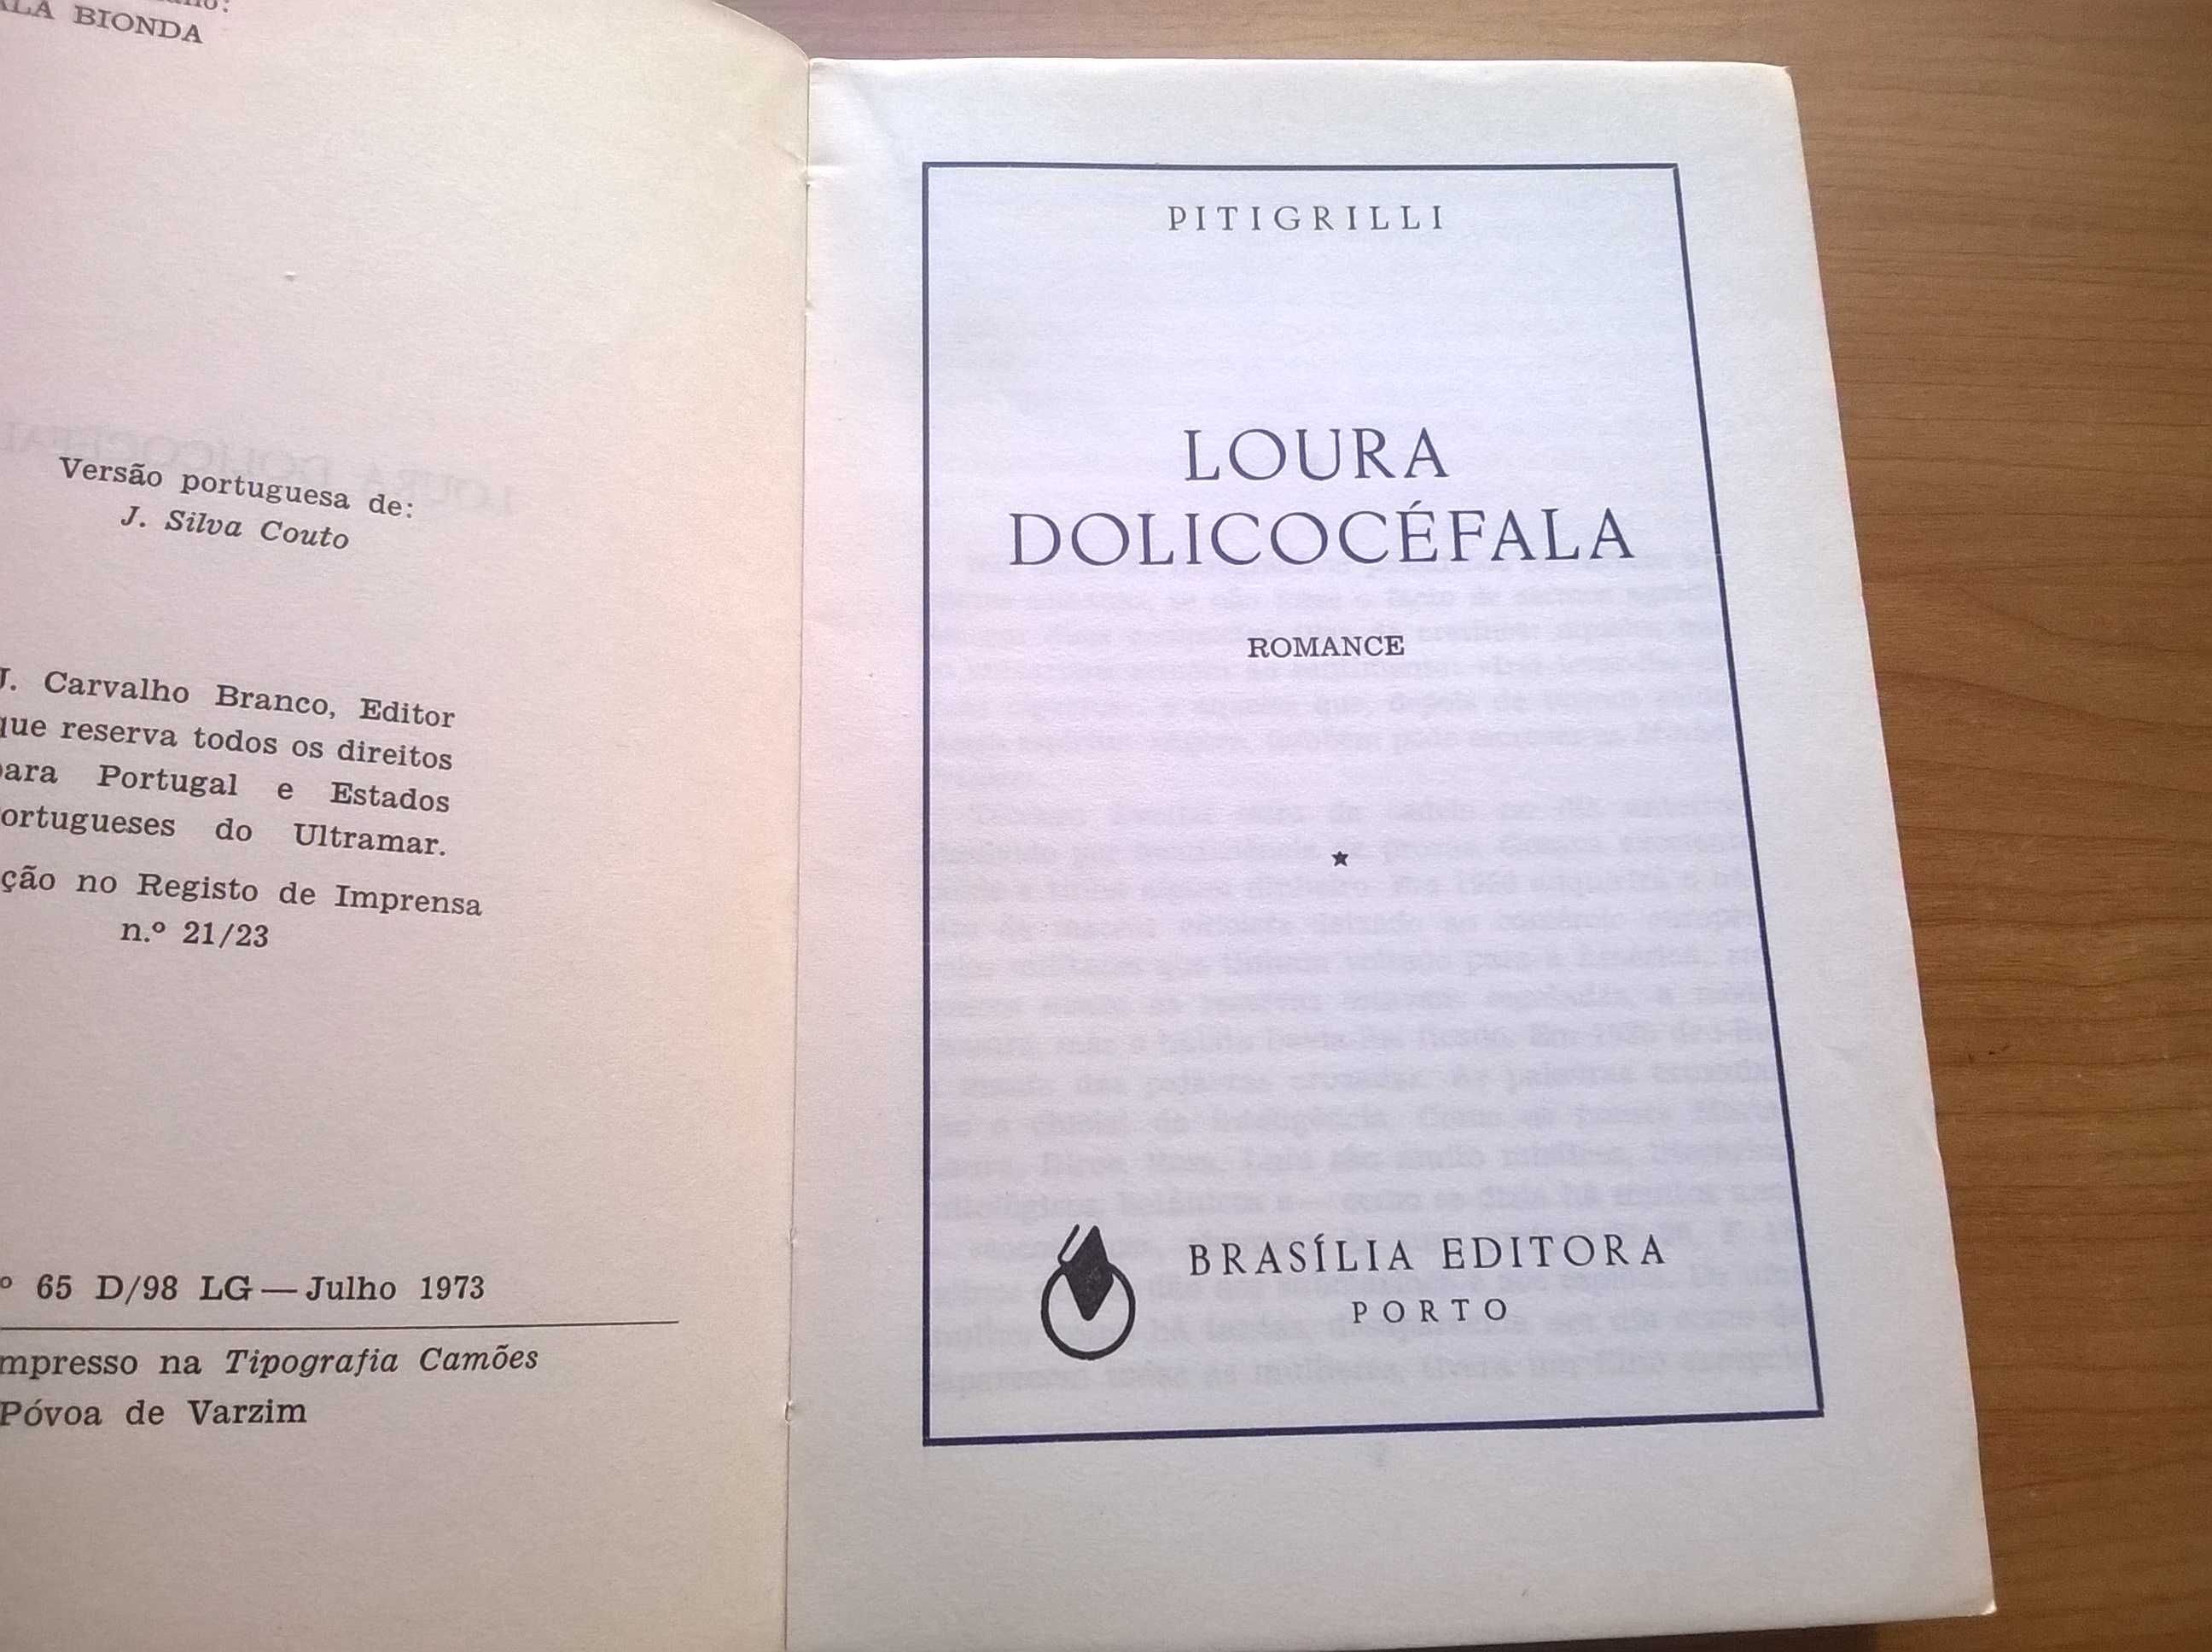 Loura Dolicocéfala - Pitigrilli (portes grátis)